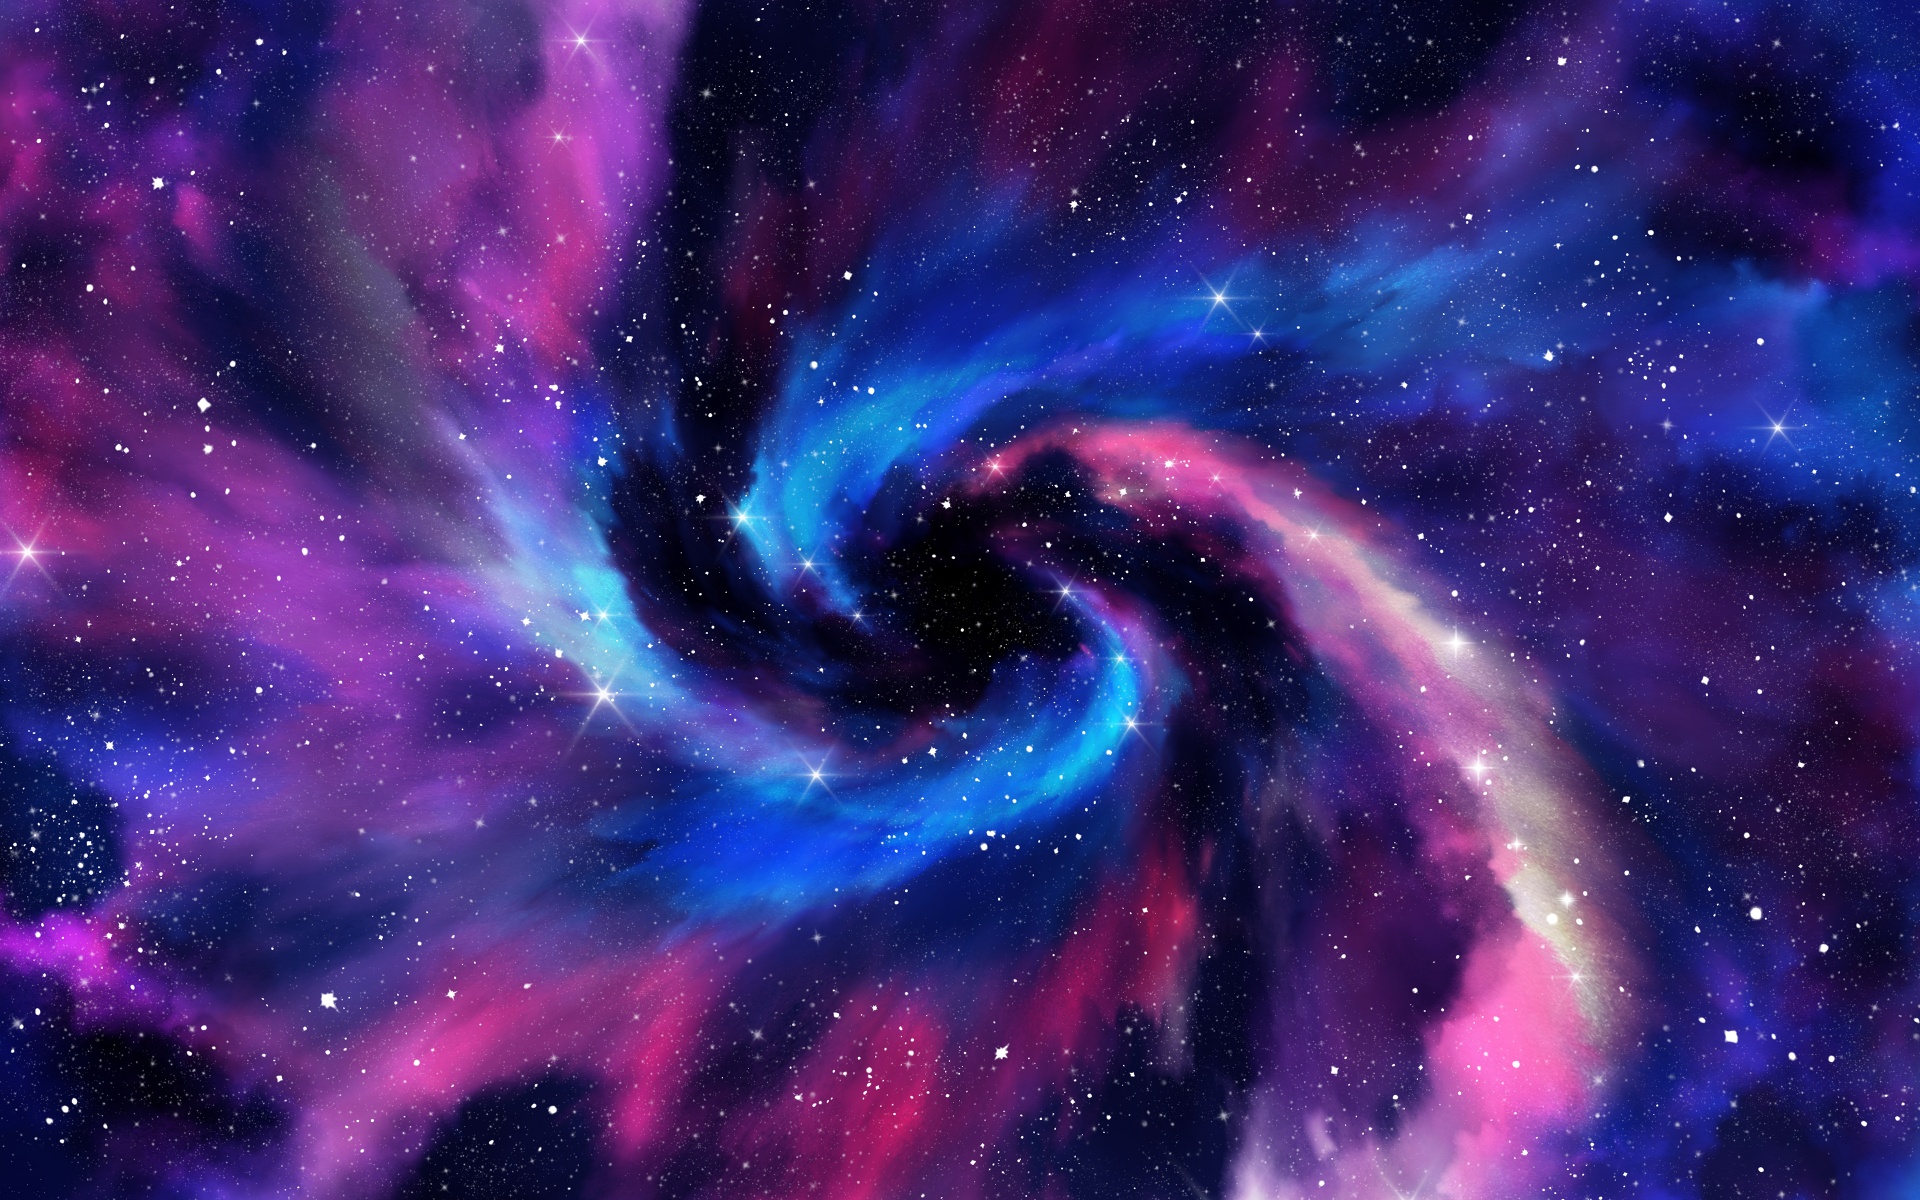 Những vòng xoắn đầy mê hoặc của Spiral galaxy đã trở thành chủ đề tạo nên sự đam mê của rất nhiều nhà khoa học và người yêu vũ trụ. Xem hình ảnh để khám phá những điều kì diệu đó!